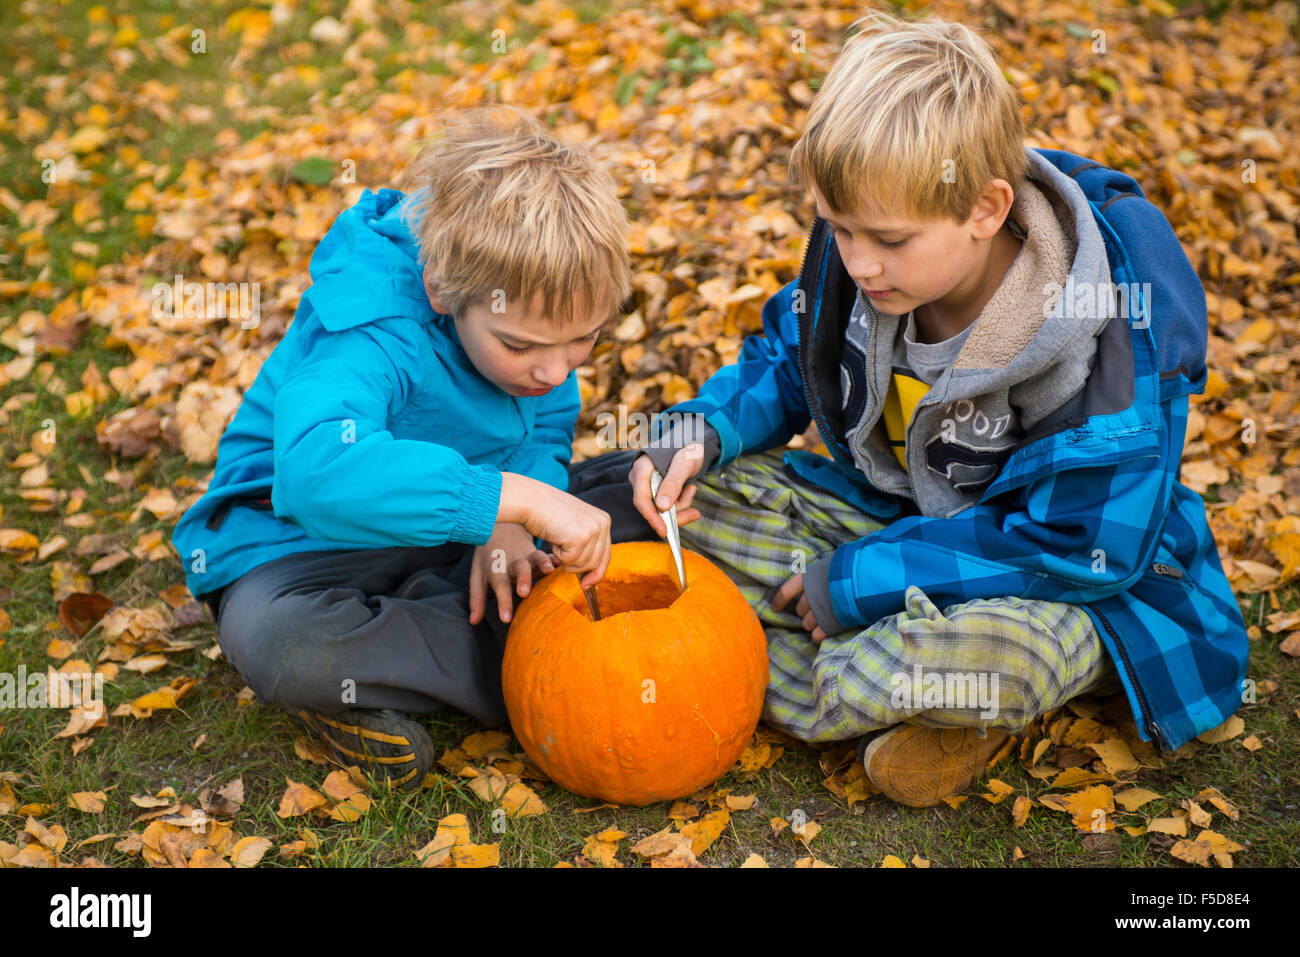 Les enfants de mêmes parents de garçons blonds hollowing out halloween citrouille à l'extérieur dans le jardin, assis sur la pelouse d'herbe d'automne, Banque D'Images